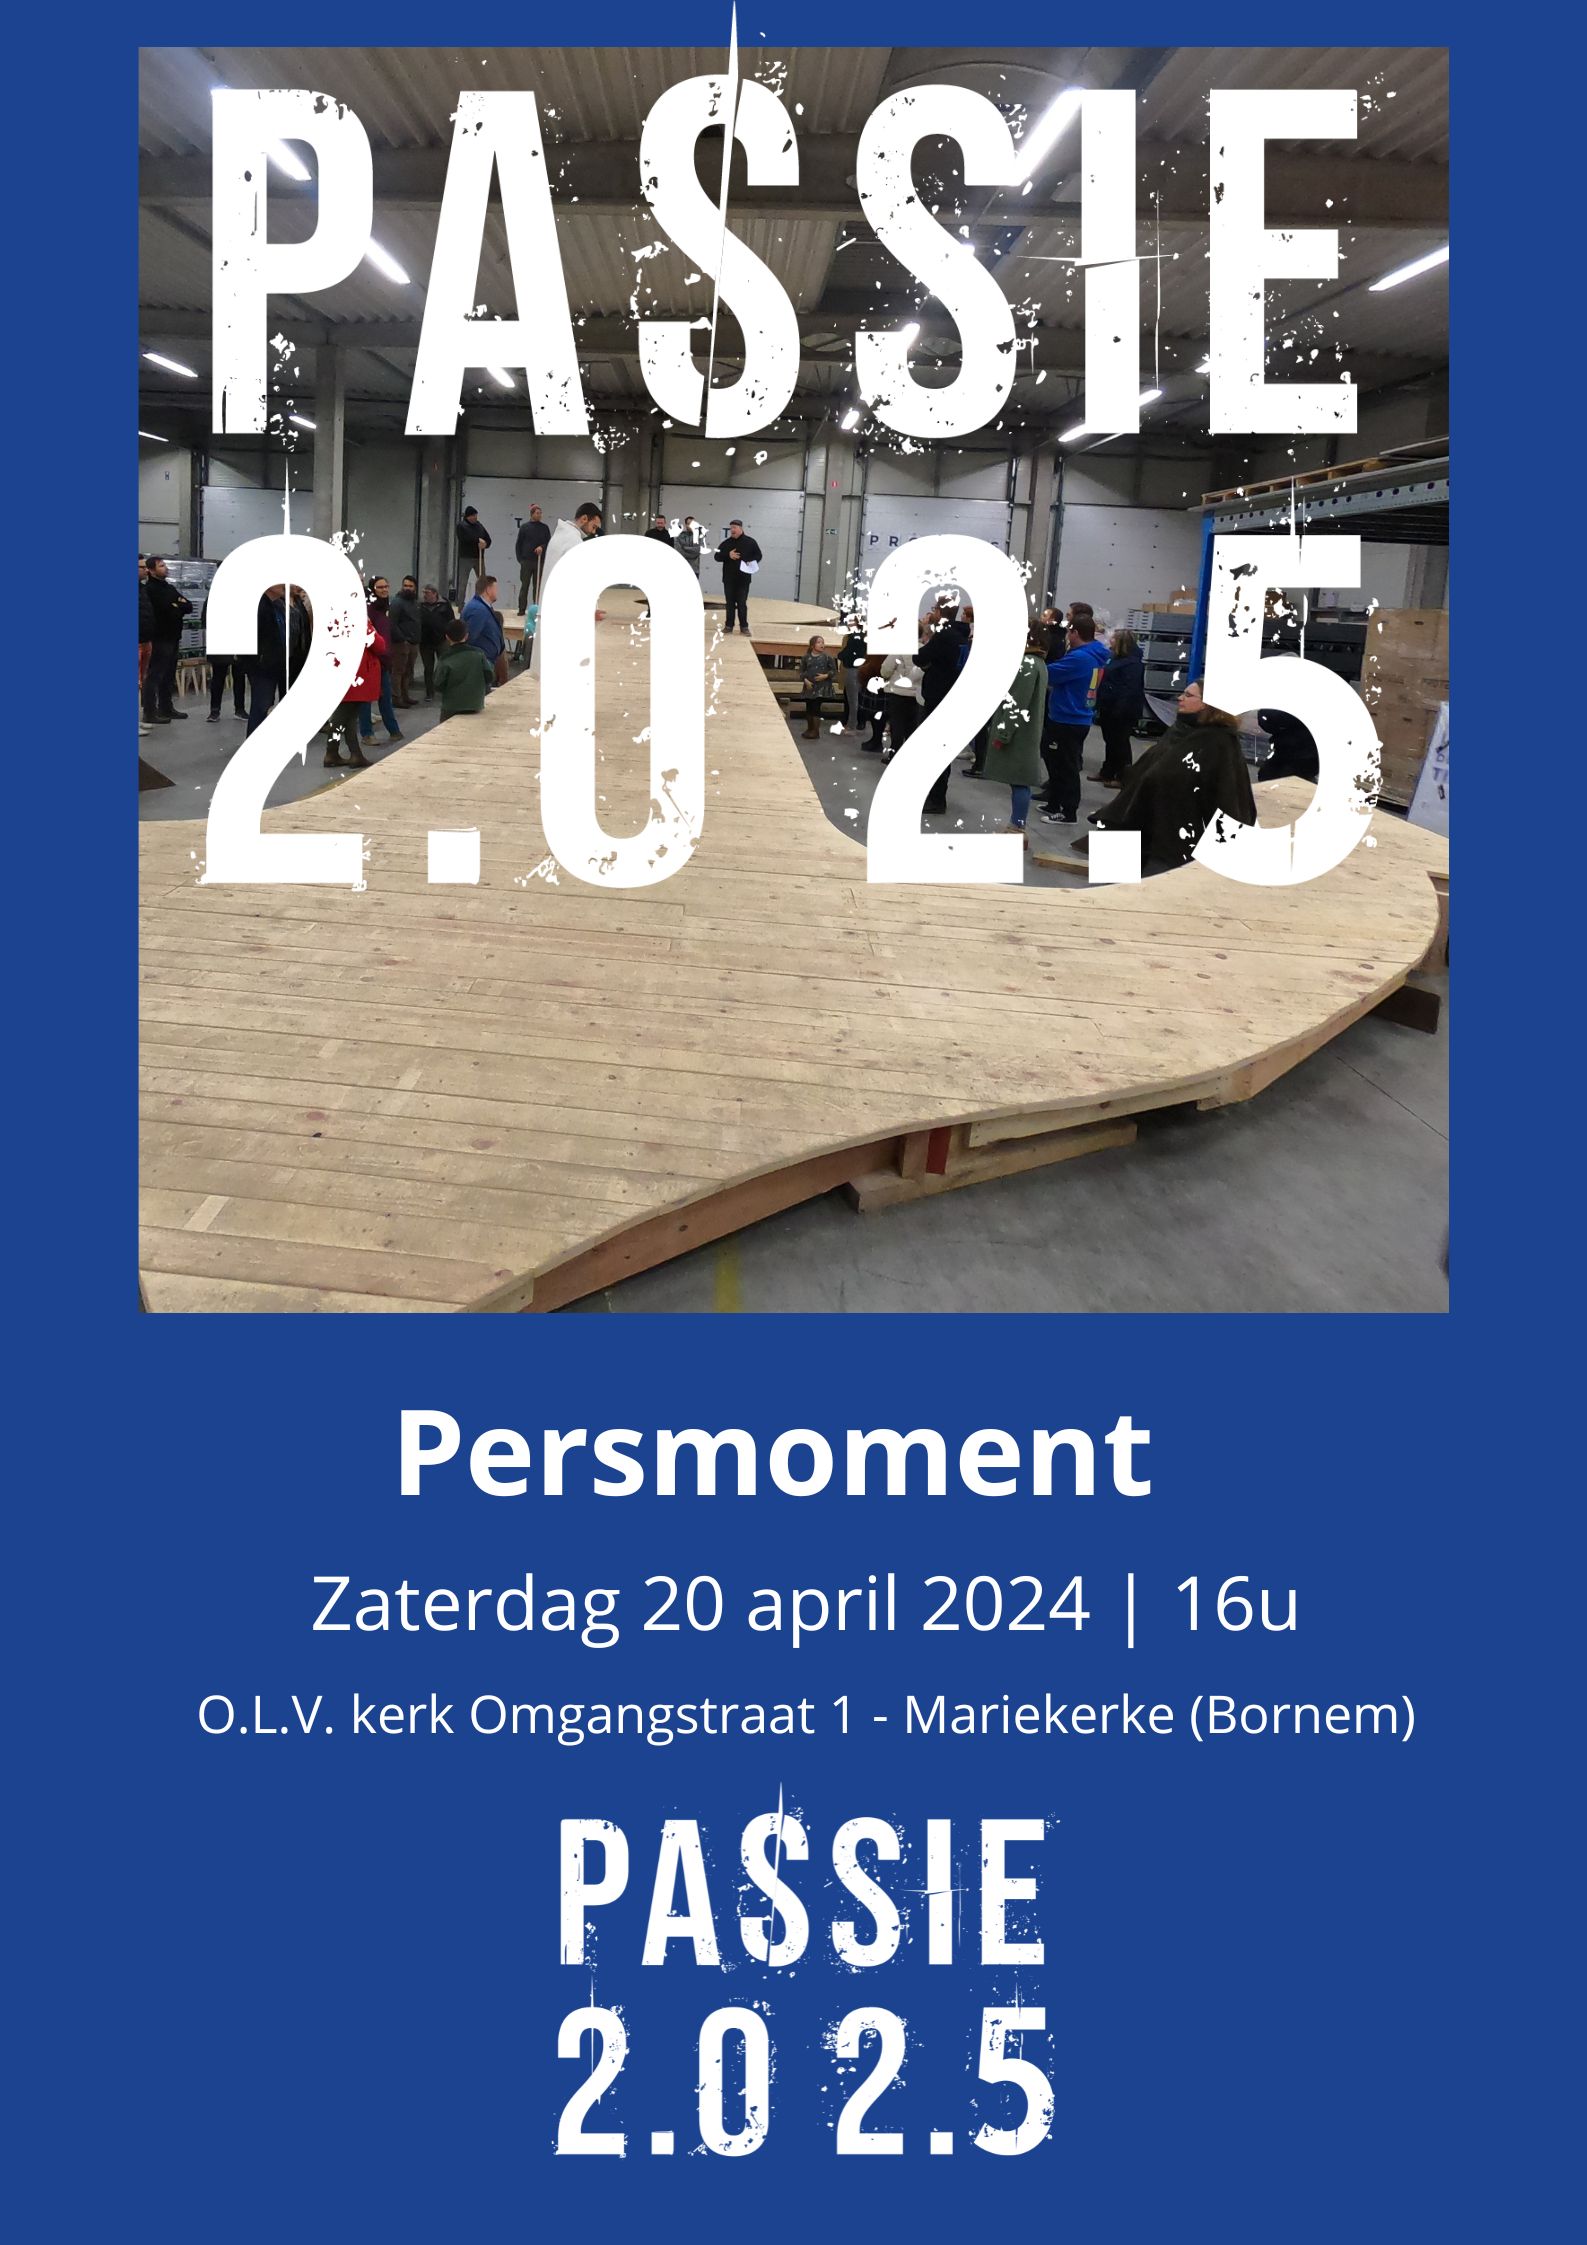 Persmoment Passie 2.0 2.5 | Zaterdag 20 april 2024 om 16u  in O.L.V. kerk Mariekerke (Bornem)